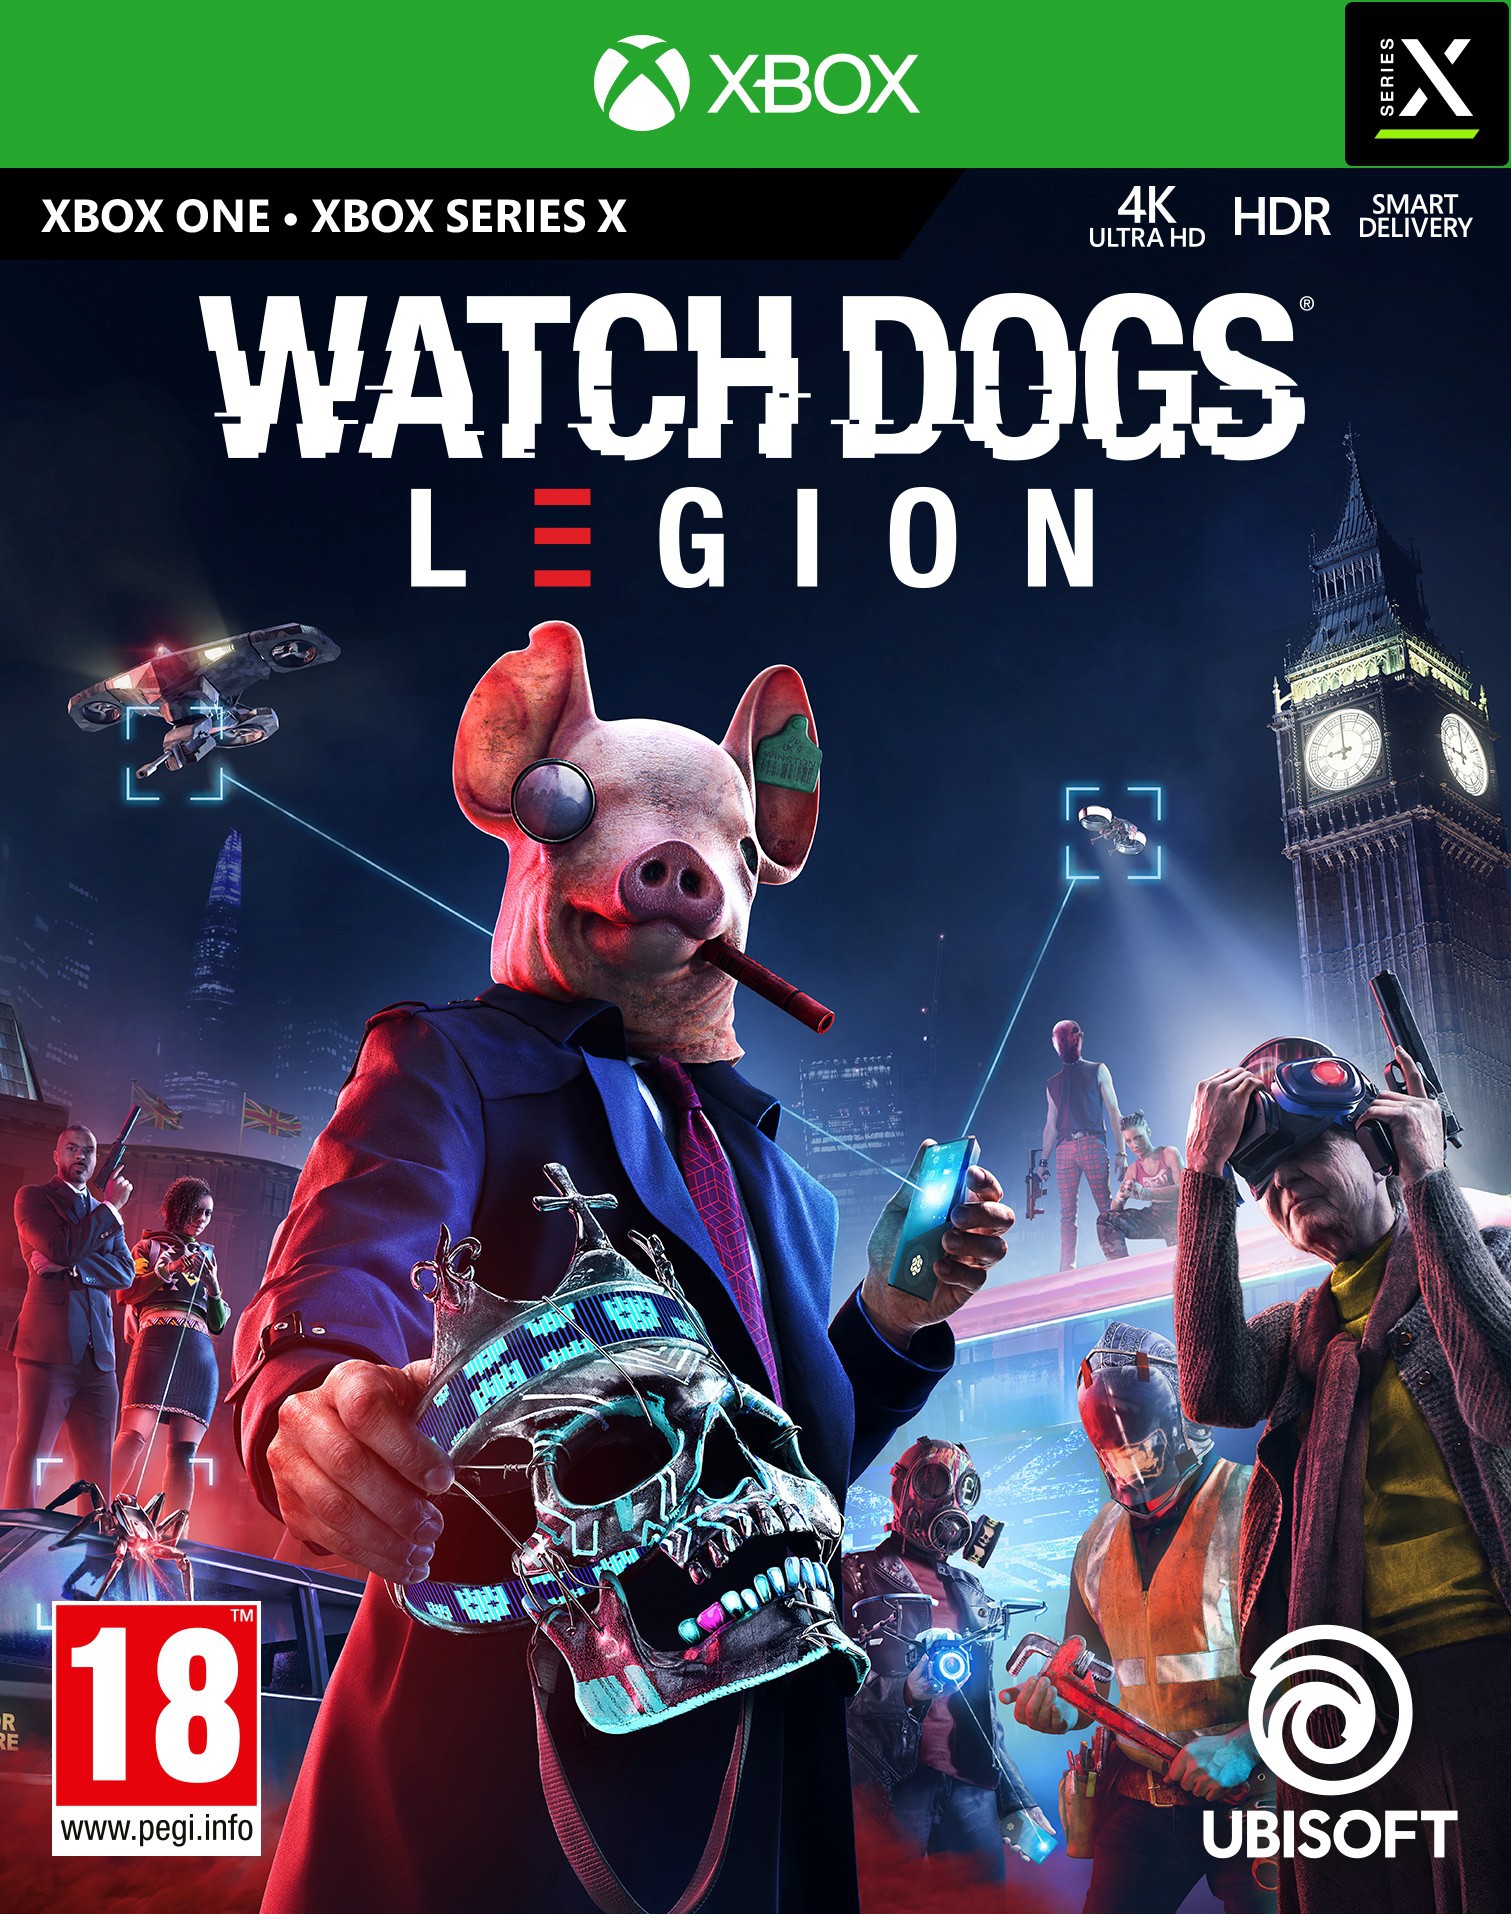 Watch Dogs Legion Standard Edition